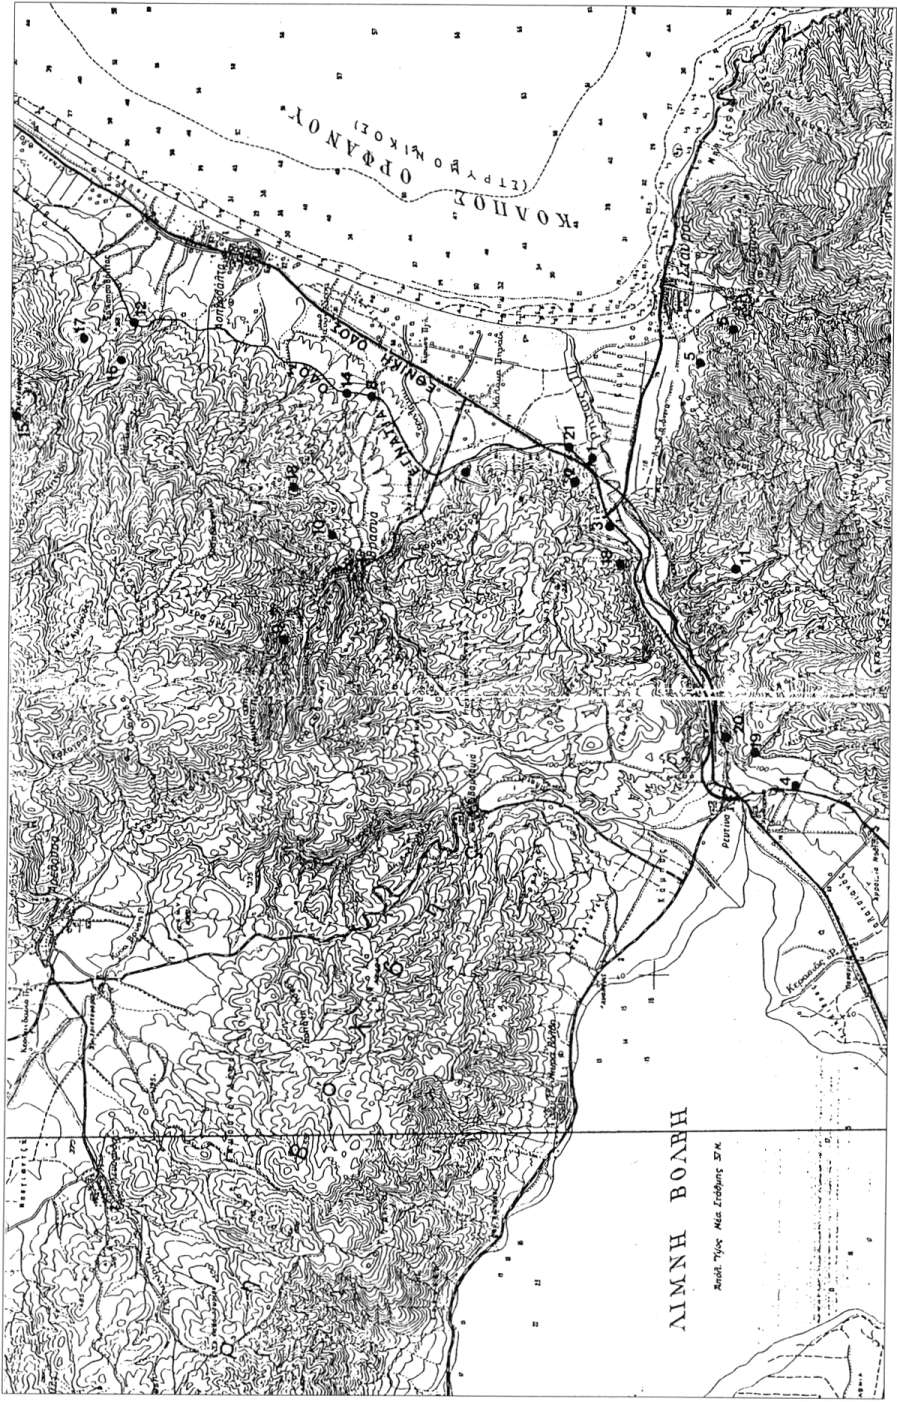 Εικ 1 Τοπογραφικό διάγραμμα της περιοχής του Ρηχίου ποταμού και του ΒΔ. τμήματος του Στρνμονικού κόλπου. Υπόμνημα χάρτη: I. Μύλος Κουντουρά, 2. Αρχαίος οικισμός, 3. Αναποδογιάννης, 4.